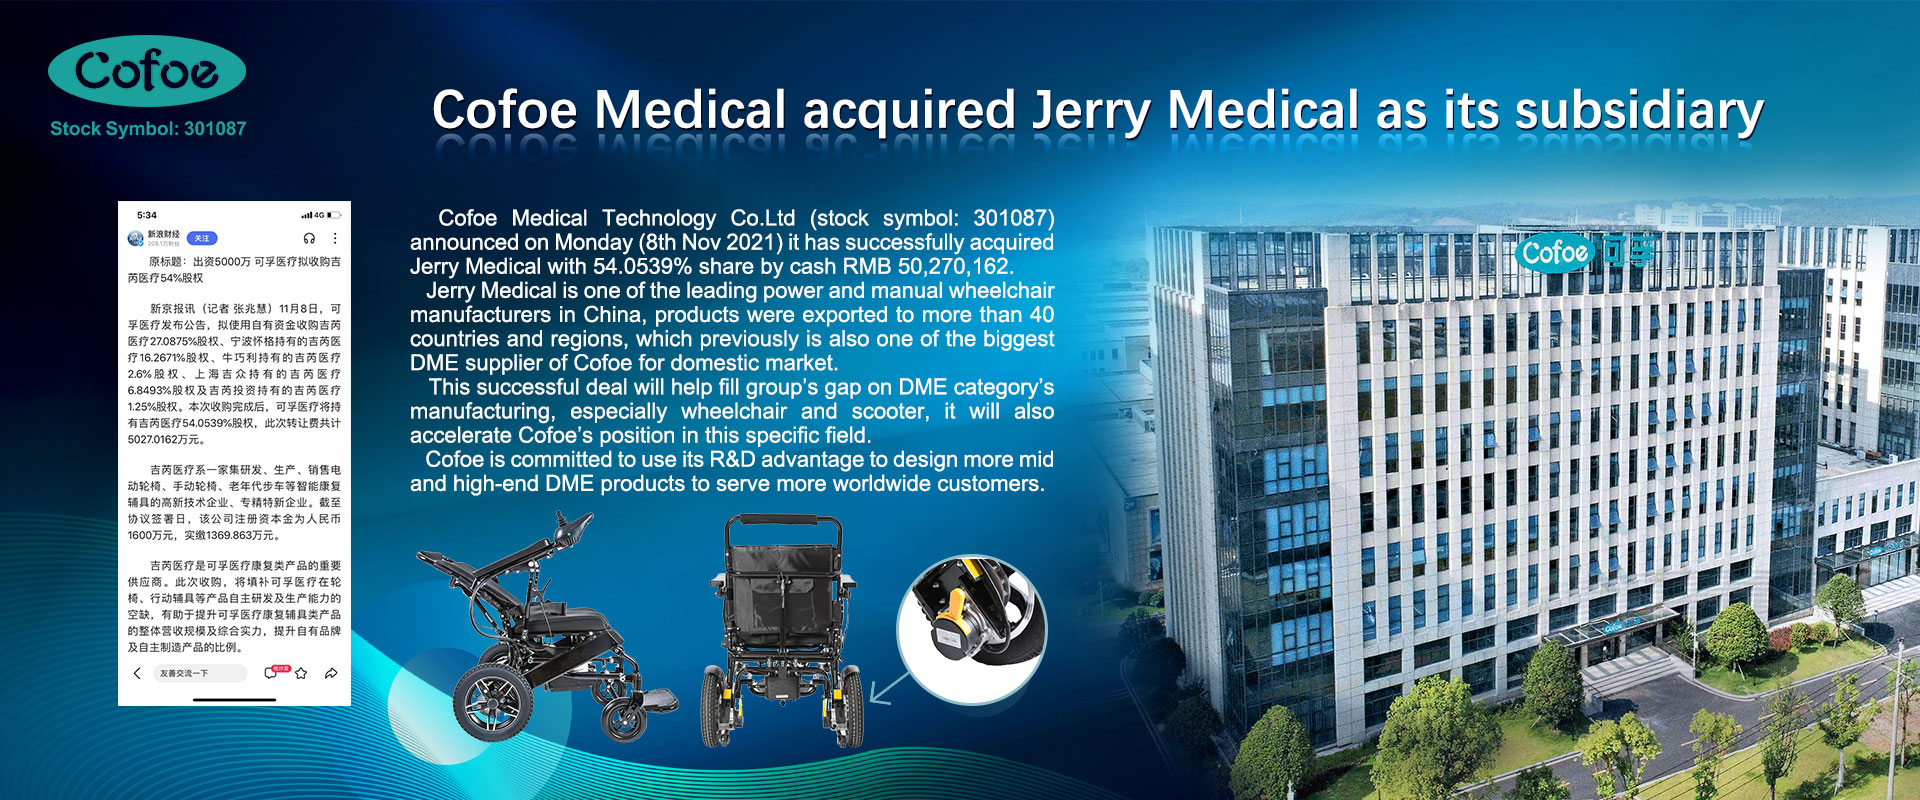 Tecnologia Médica de Coefoe Anunciada Jerry Medical como sua subsidiária - 20211111